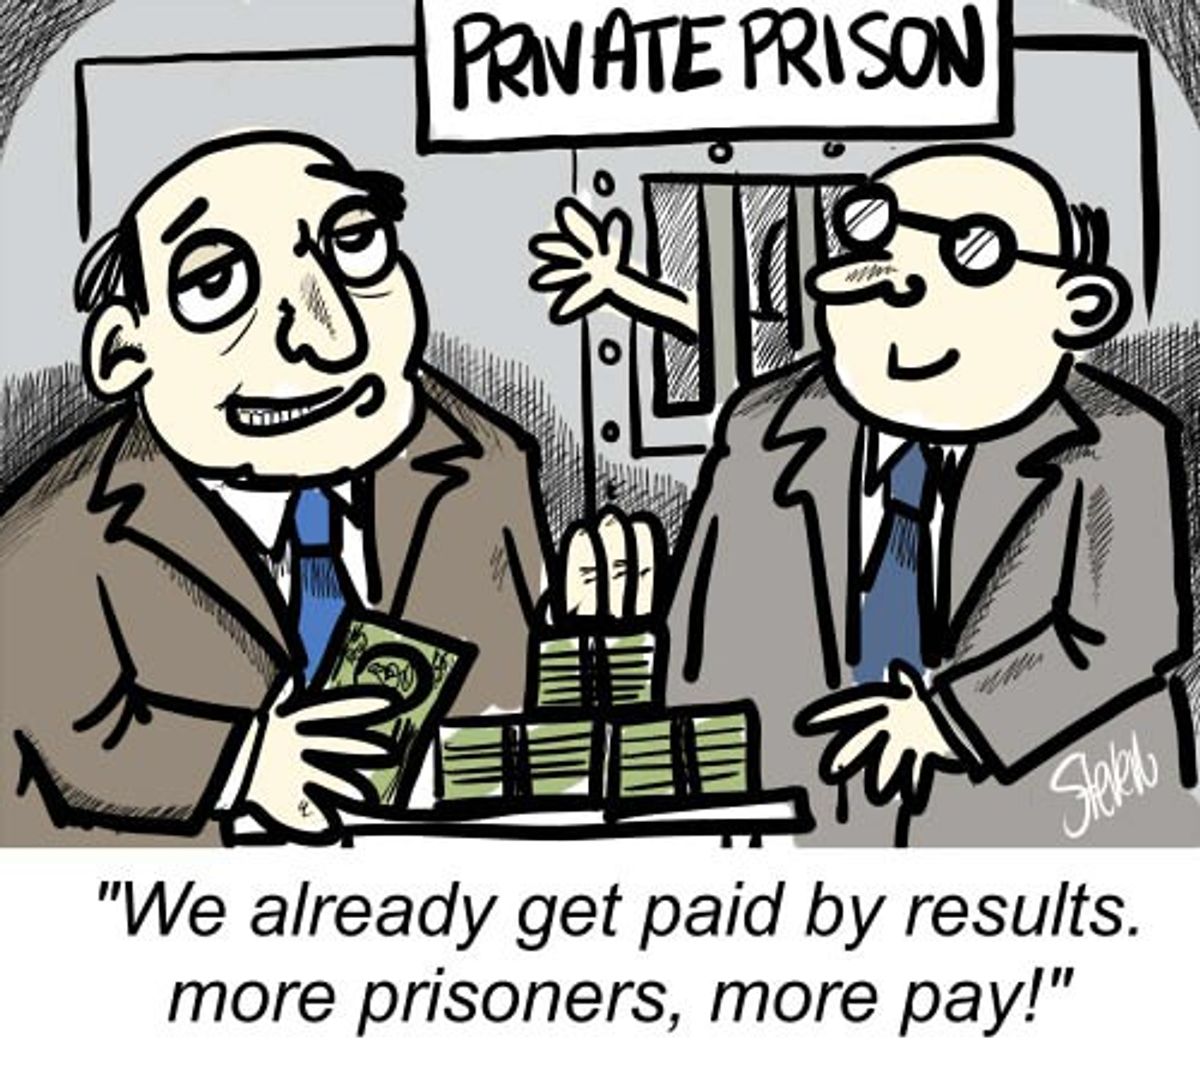 Private Prisons